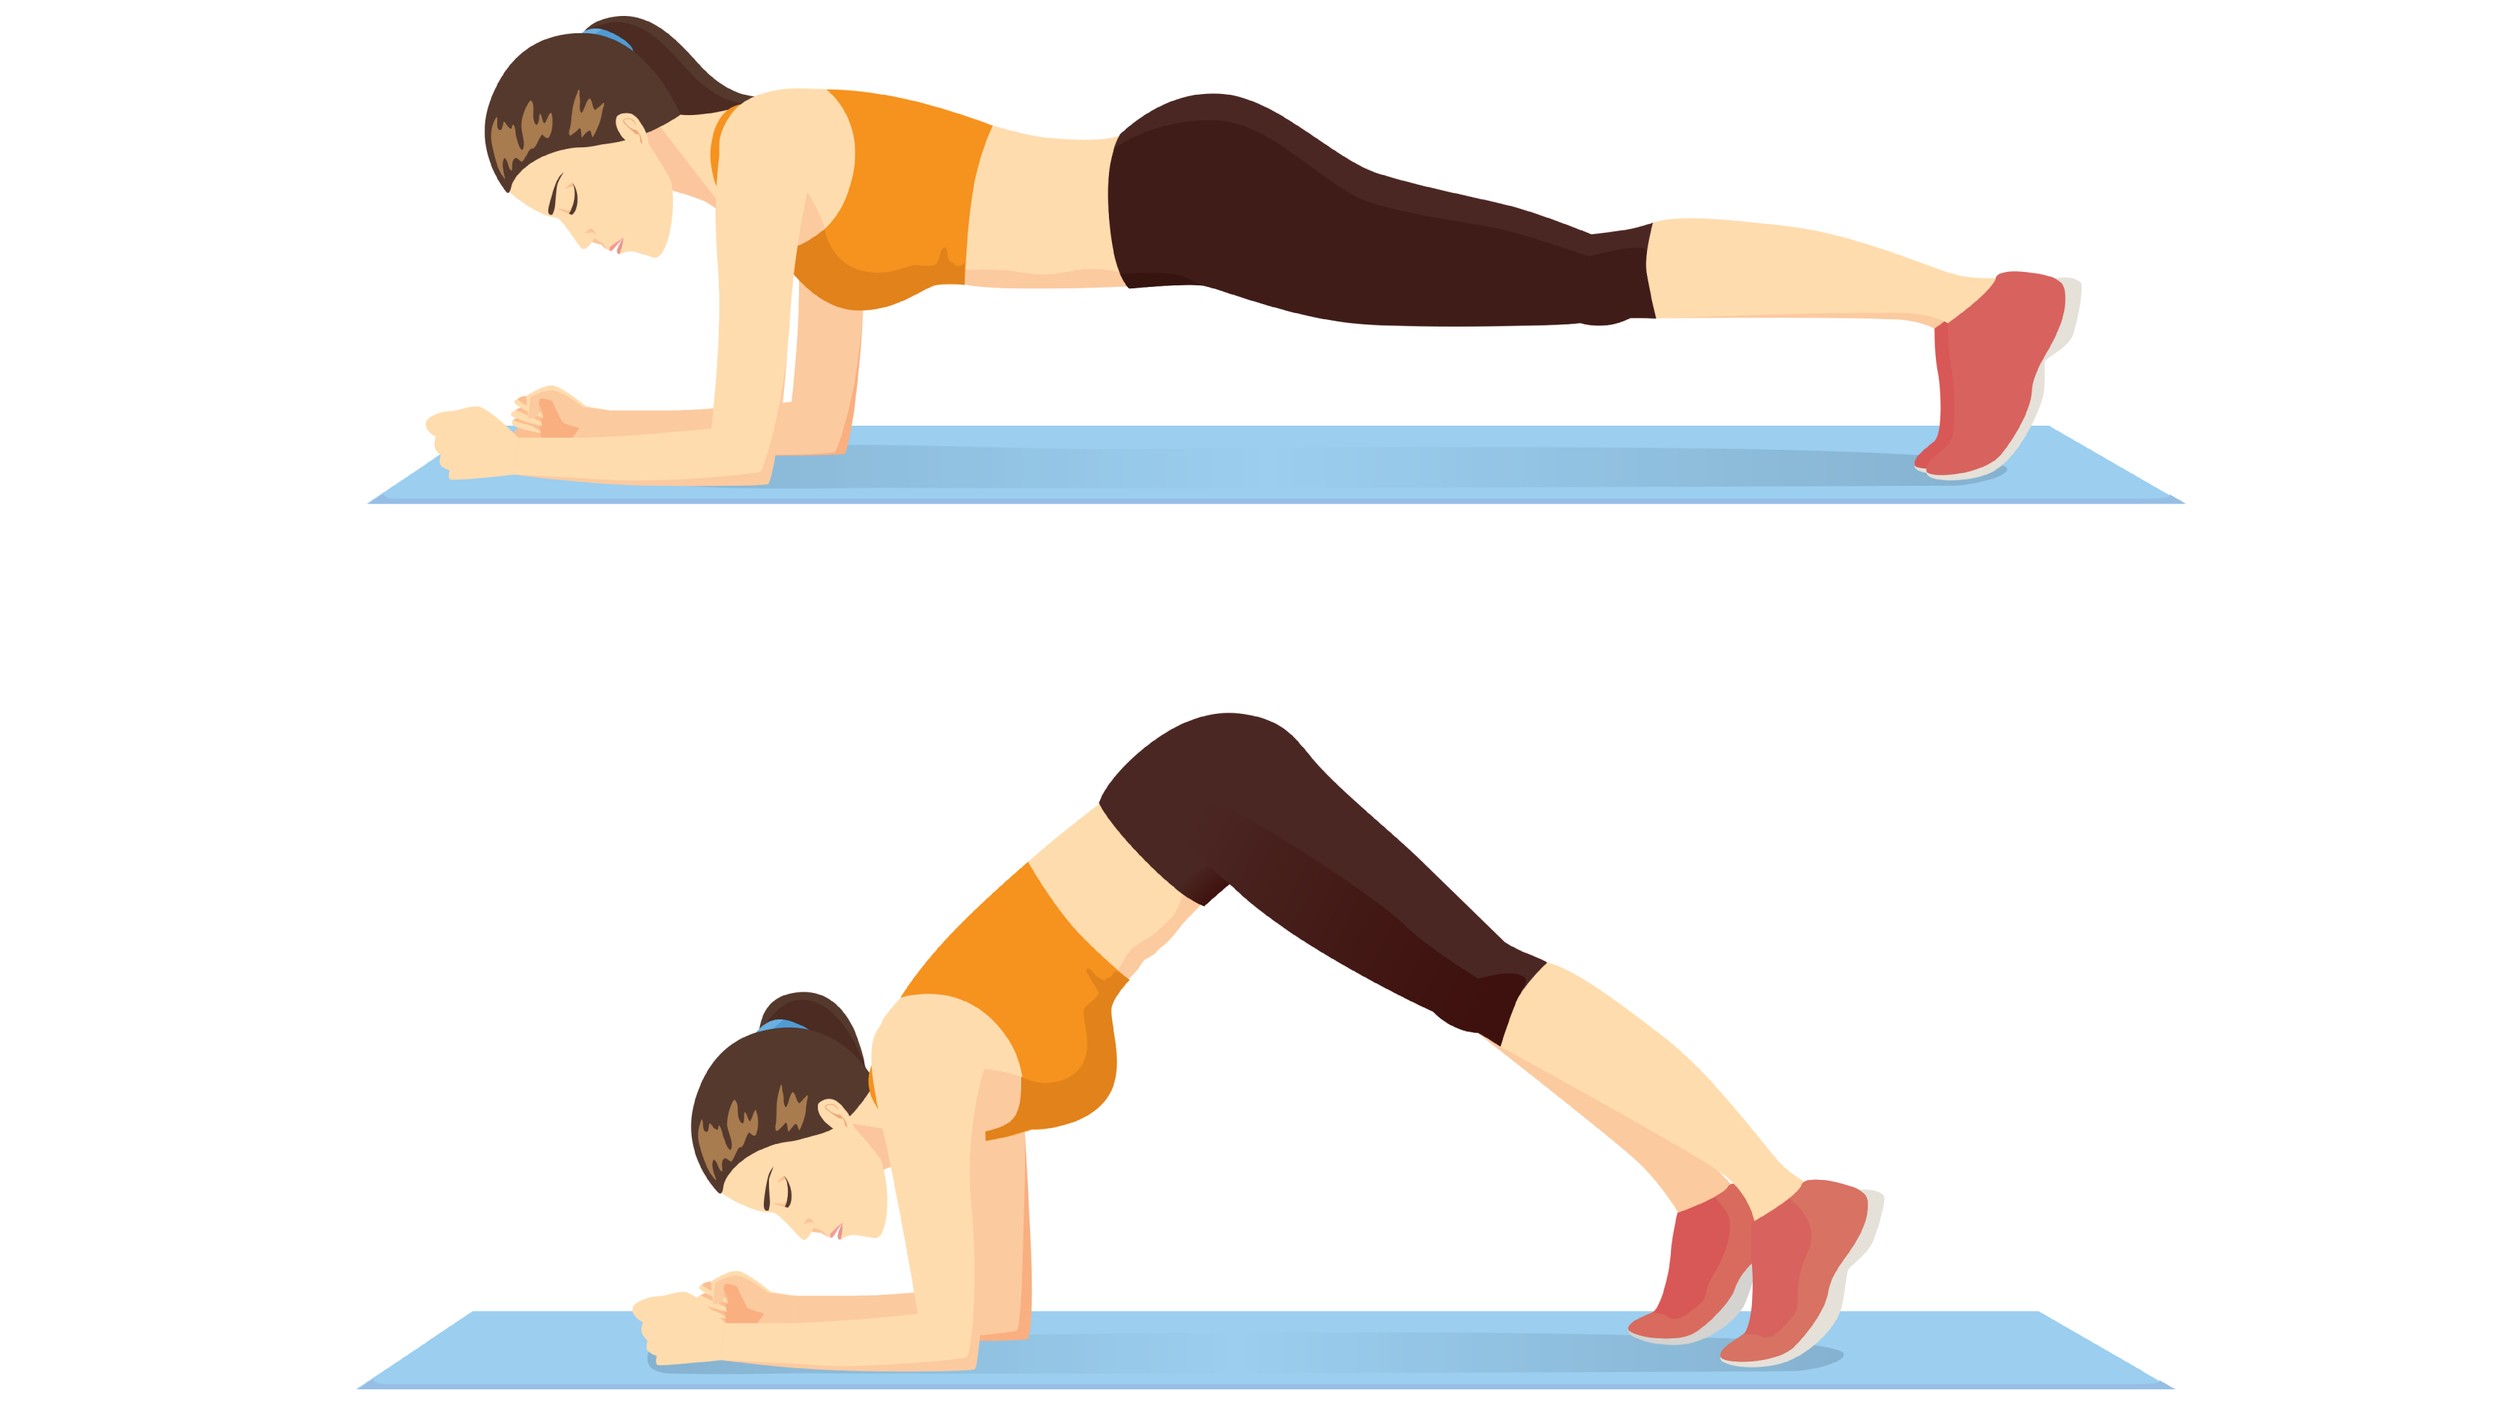 Женщина делает упражнение в позе «Дельфин-планка» в 2 этапа для гида.  Иллюстрация о введении в положение тренировки пресса.